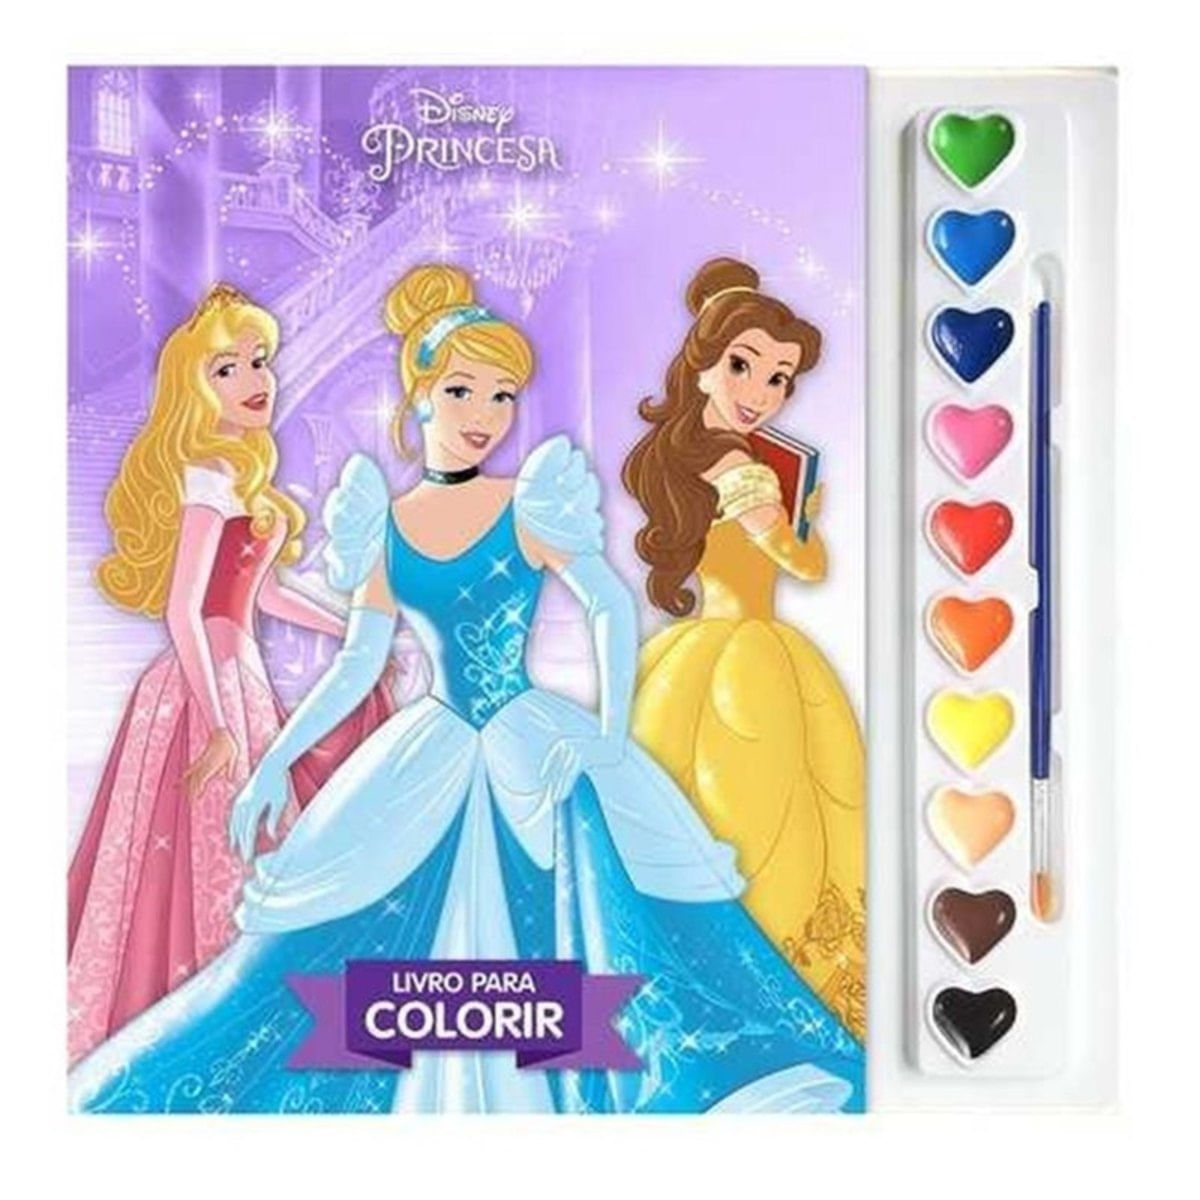 Colorindo as Princesas da Disney  Desenho dos Filmes da Disney